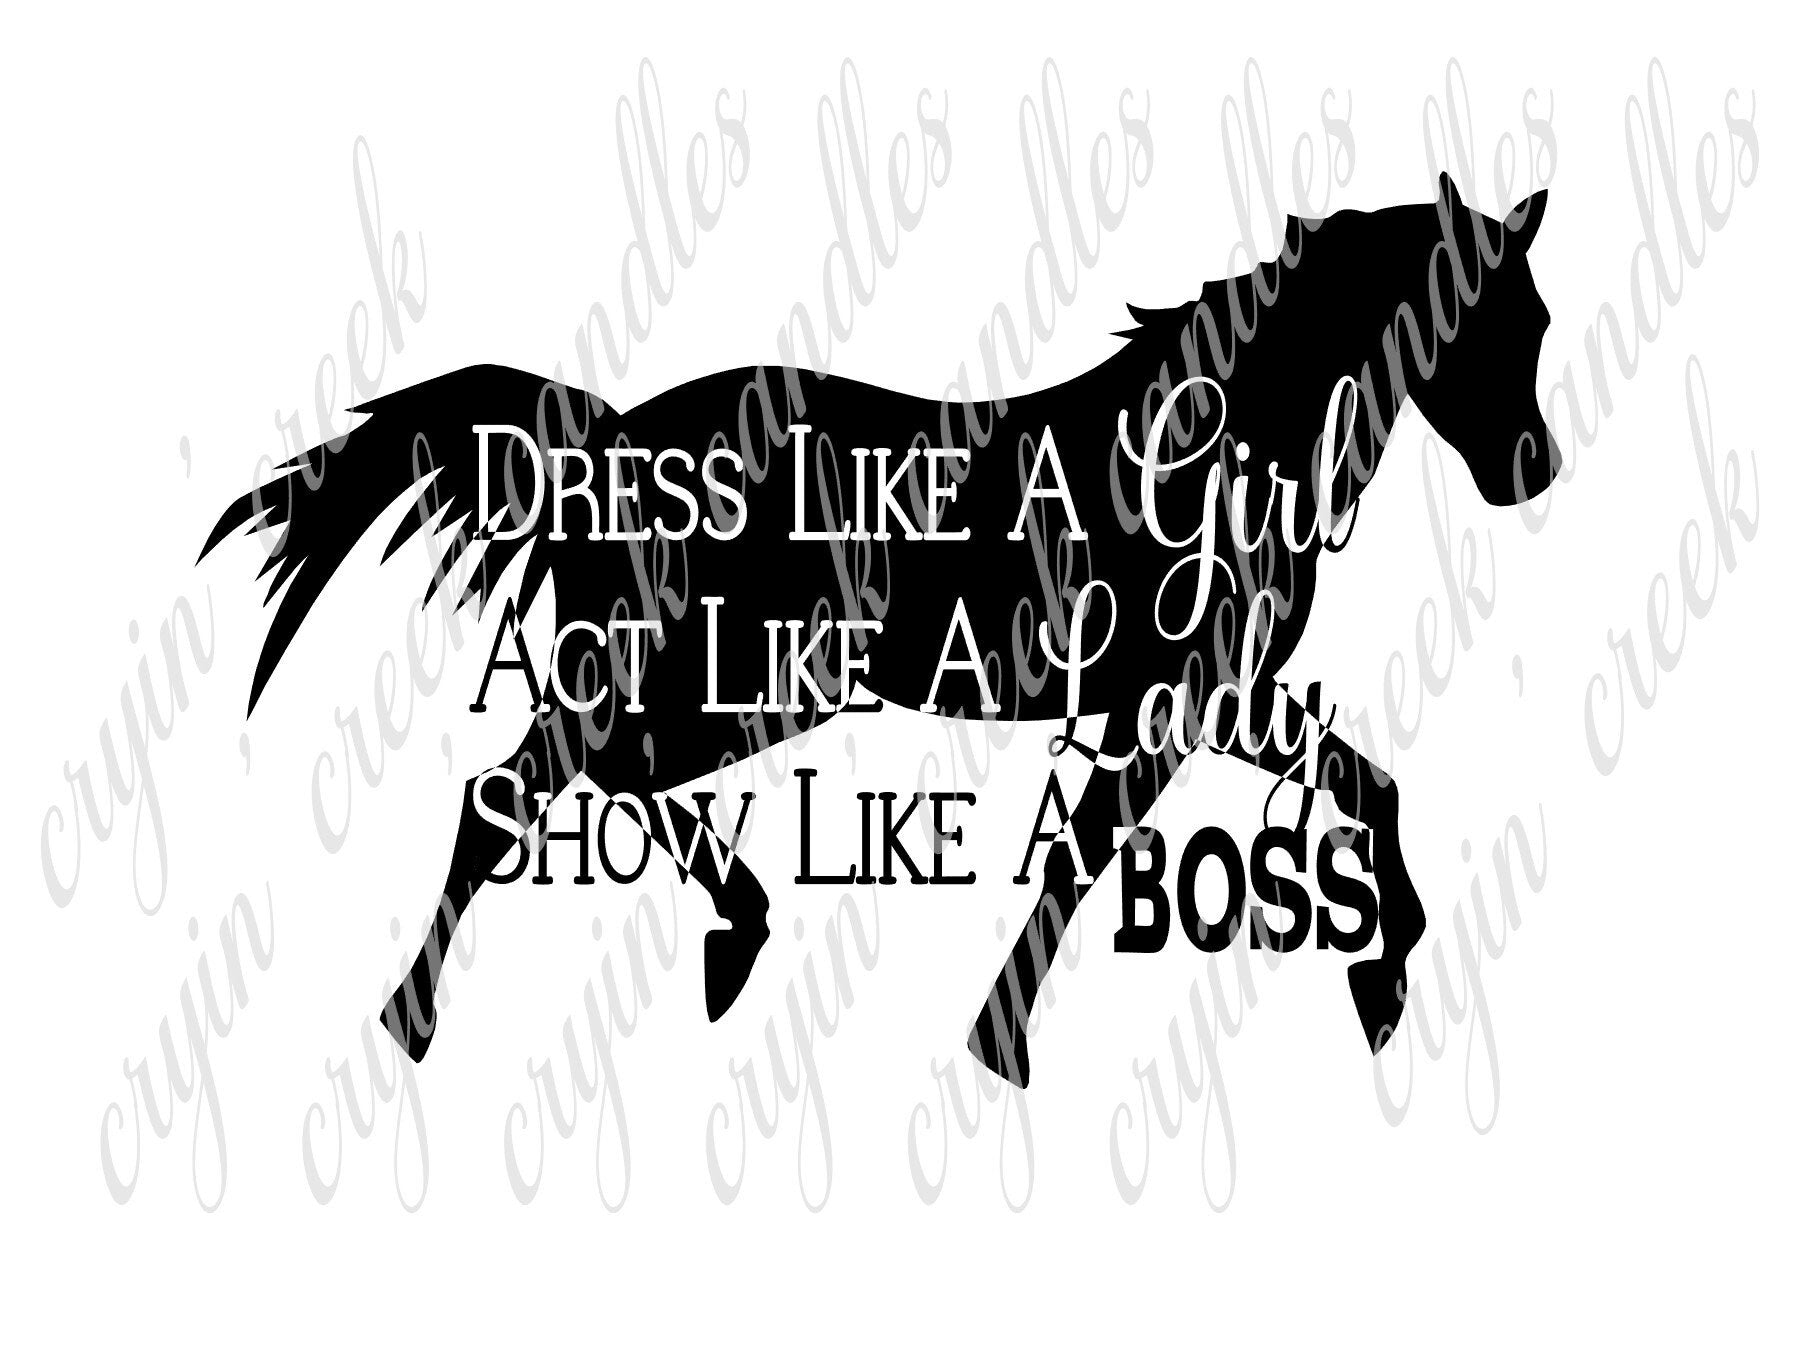 Dress Like a Girl Act Like a Lady Show (Horses) Like a Boss Download - 0